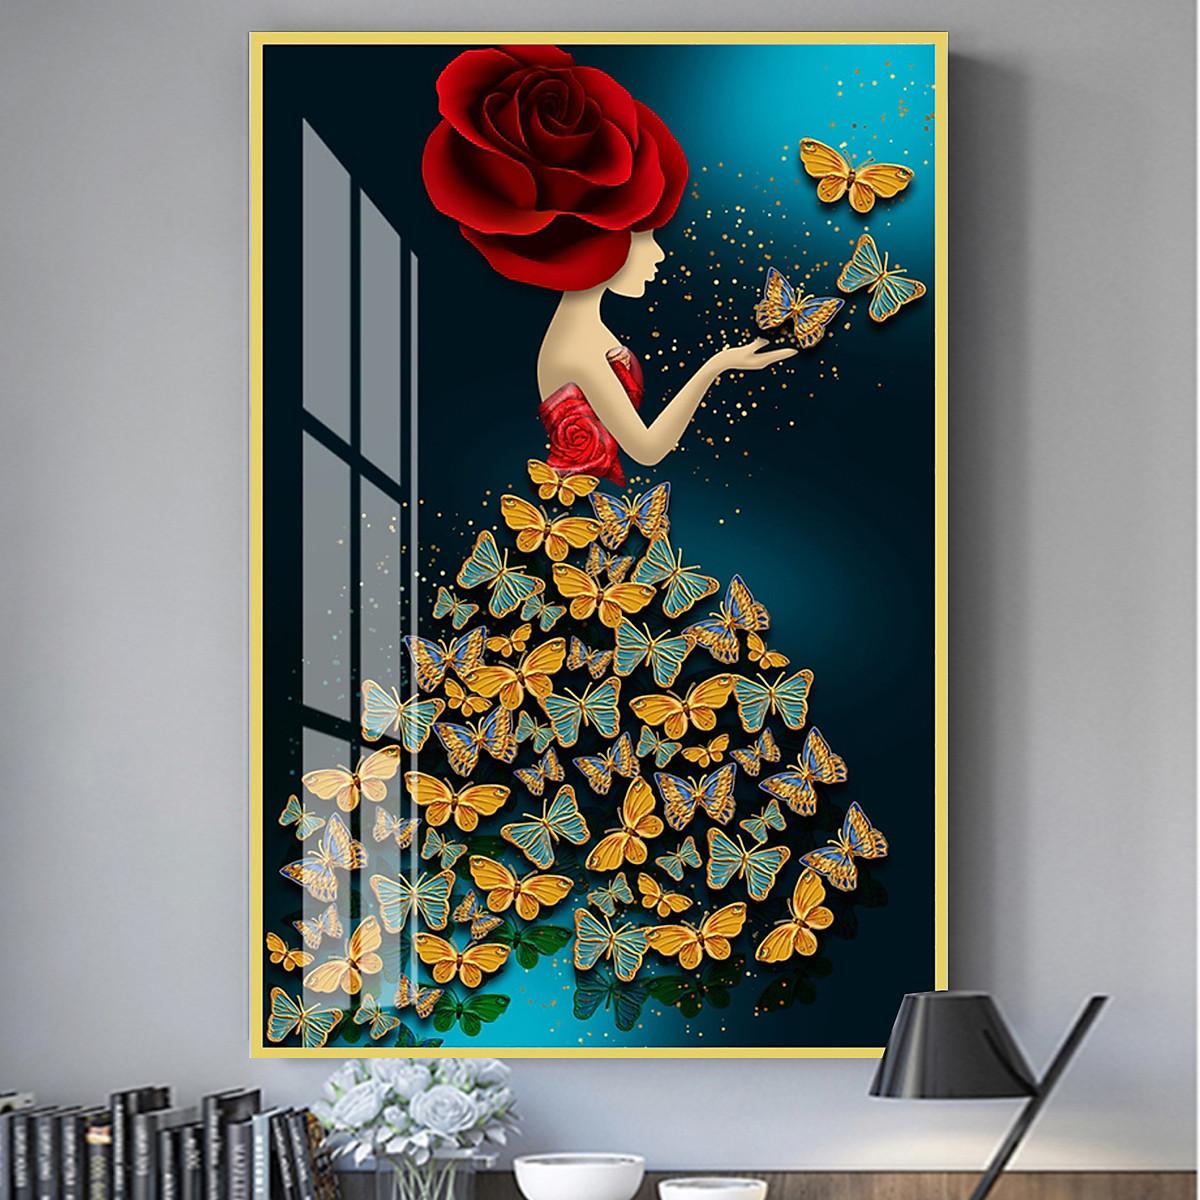 Tranh Canvas Treo Tường Hiện Đại _ Cô Gái diện chiếc váy cánh bướm siêu đẹp